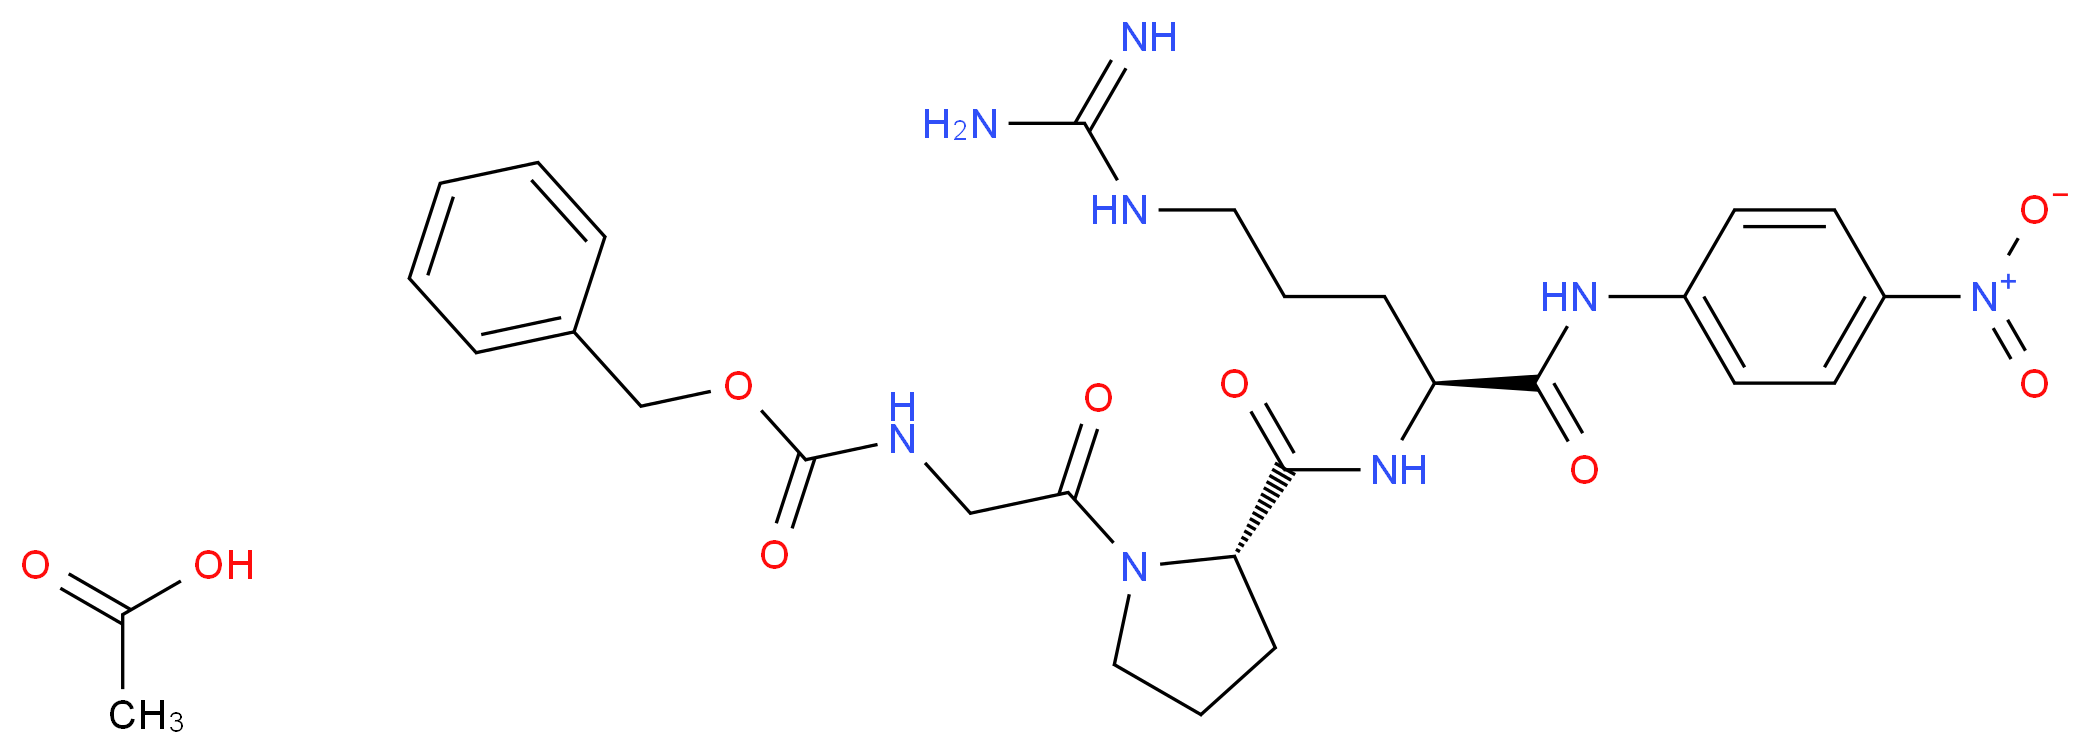 102679-70-9 molecular structure